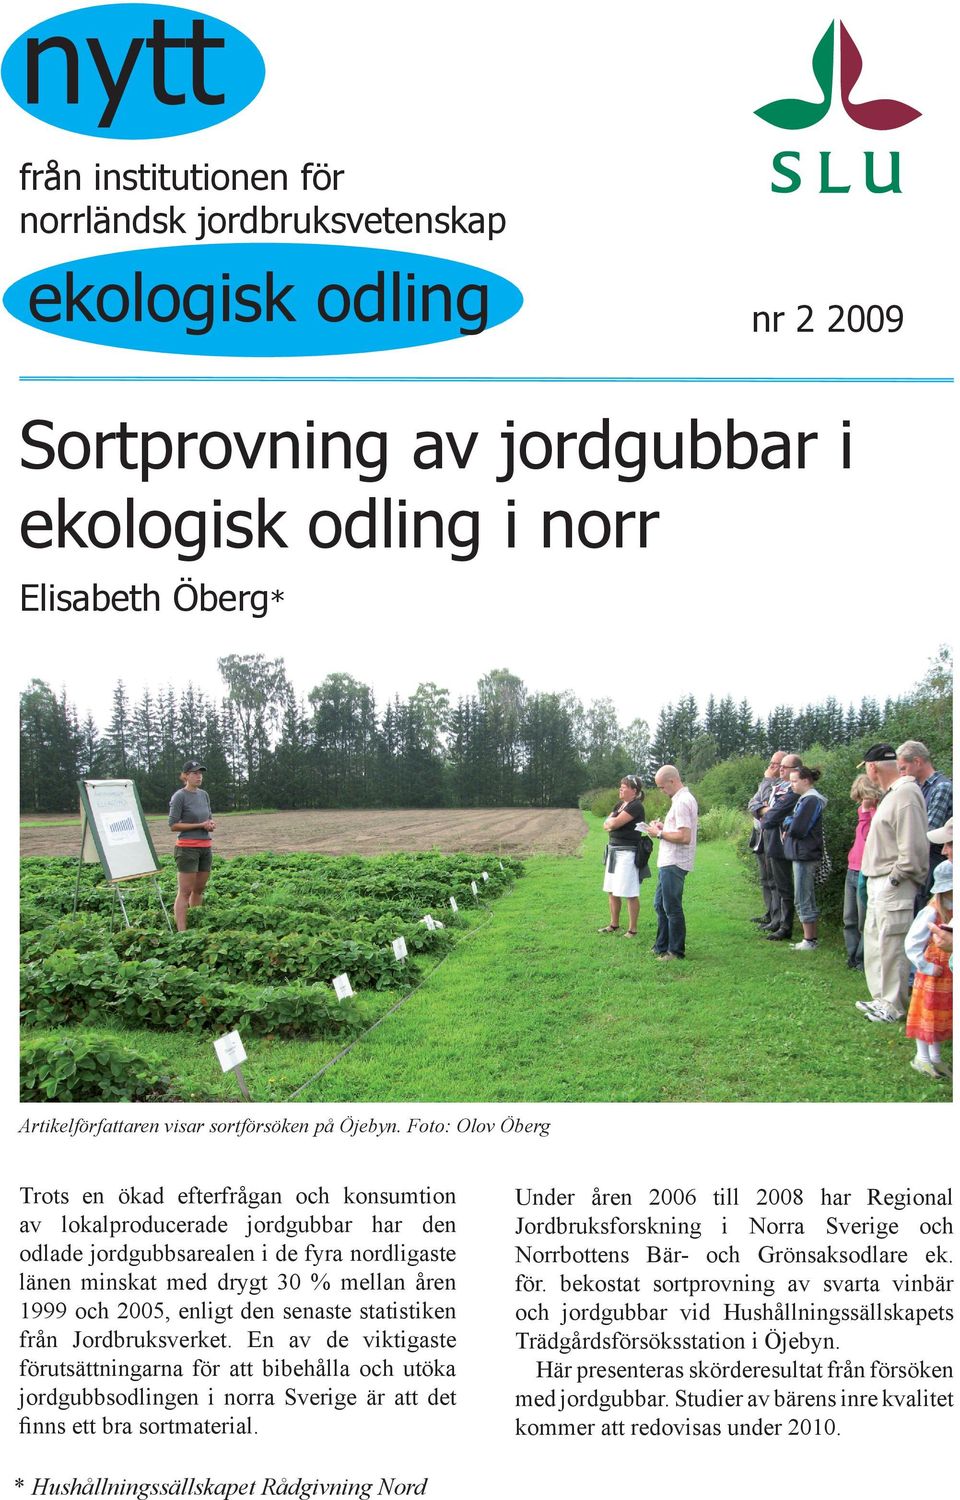 Foto: Olov Öberg Trots en ökad efterfrågan och konsumtion av lokalproducerade jordgubbar har den odlade jordgubbsarealen i de fyra nordligaste länen minskat med drygt 3 % mellan åren 1999 och 25,